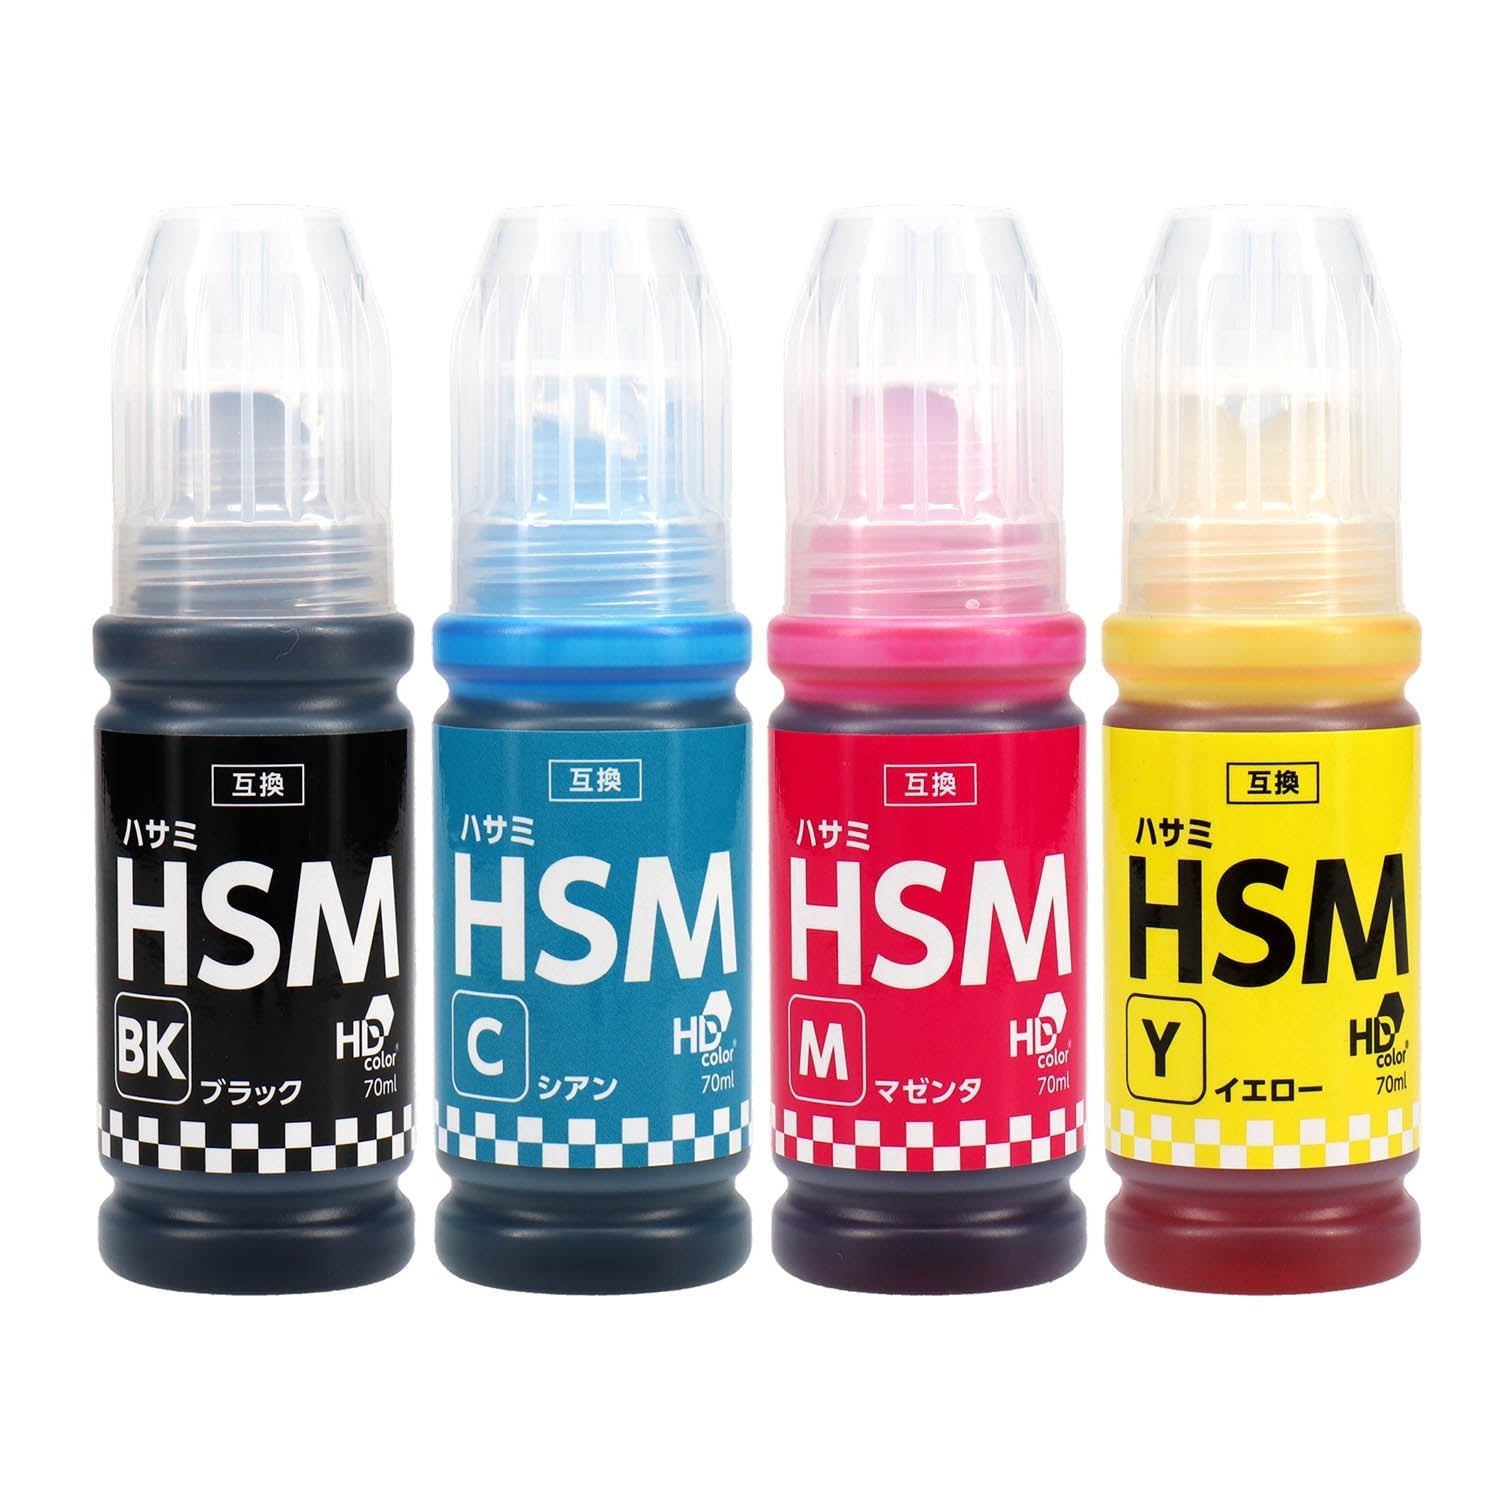 エプソン用 HSM (ハサミ) 互換インクボトル 6本選べるセット